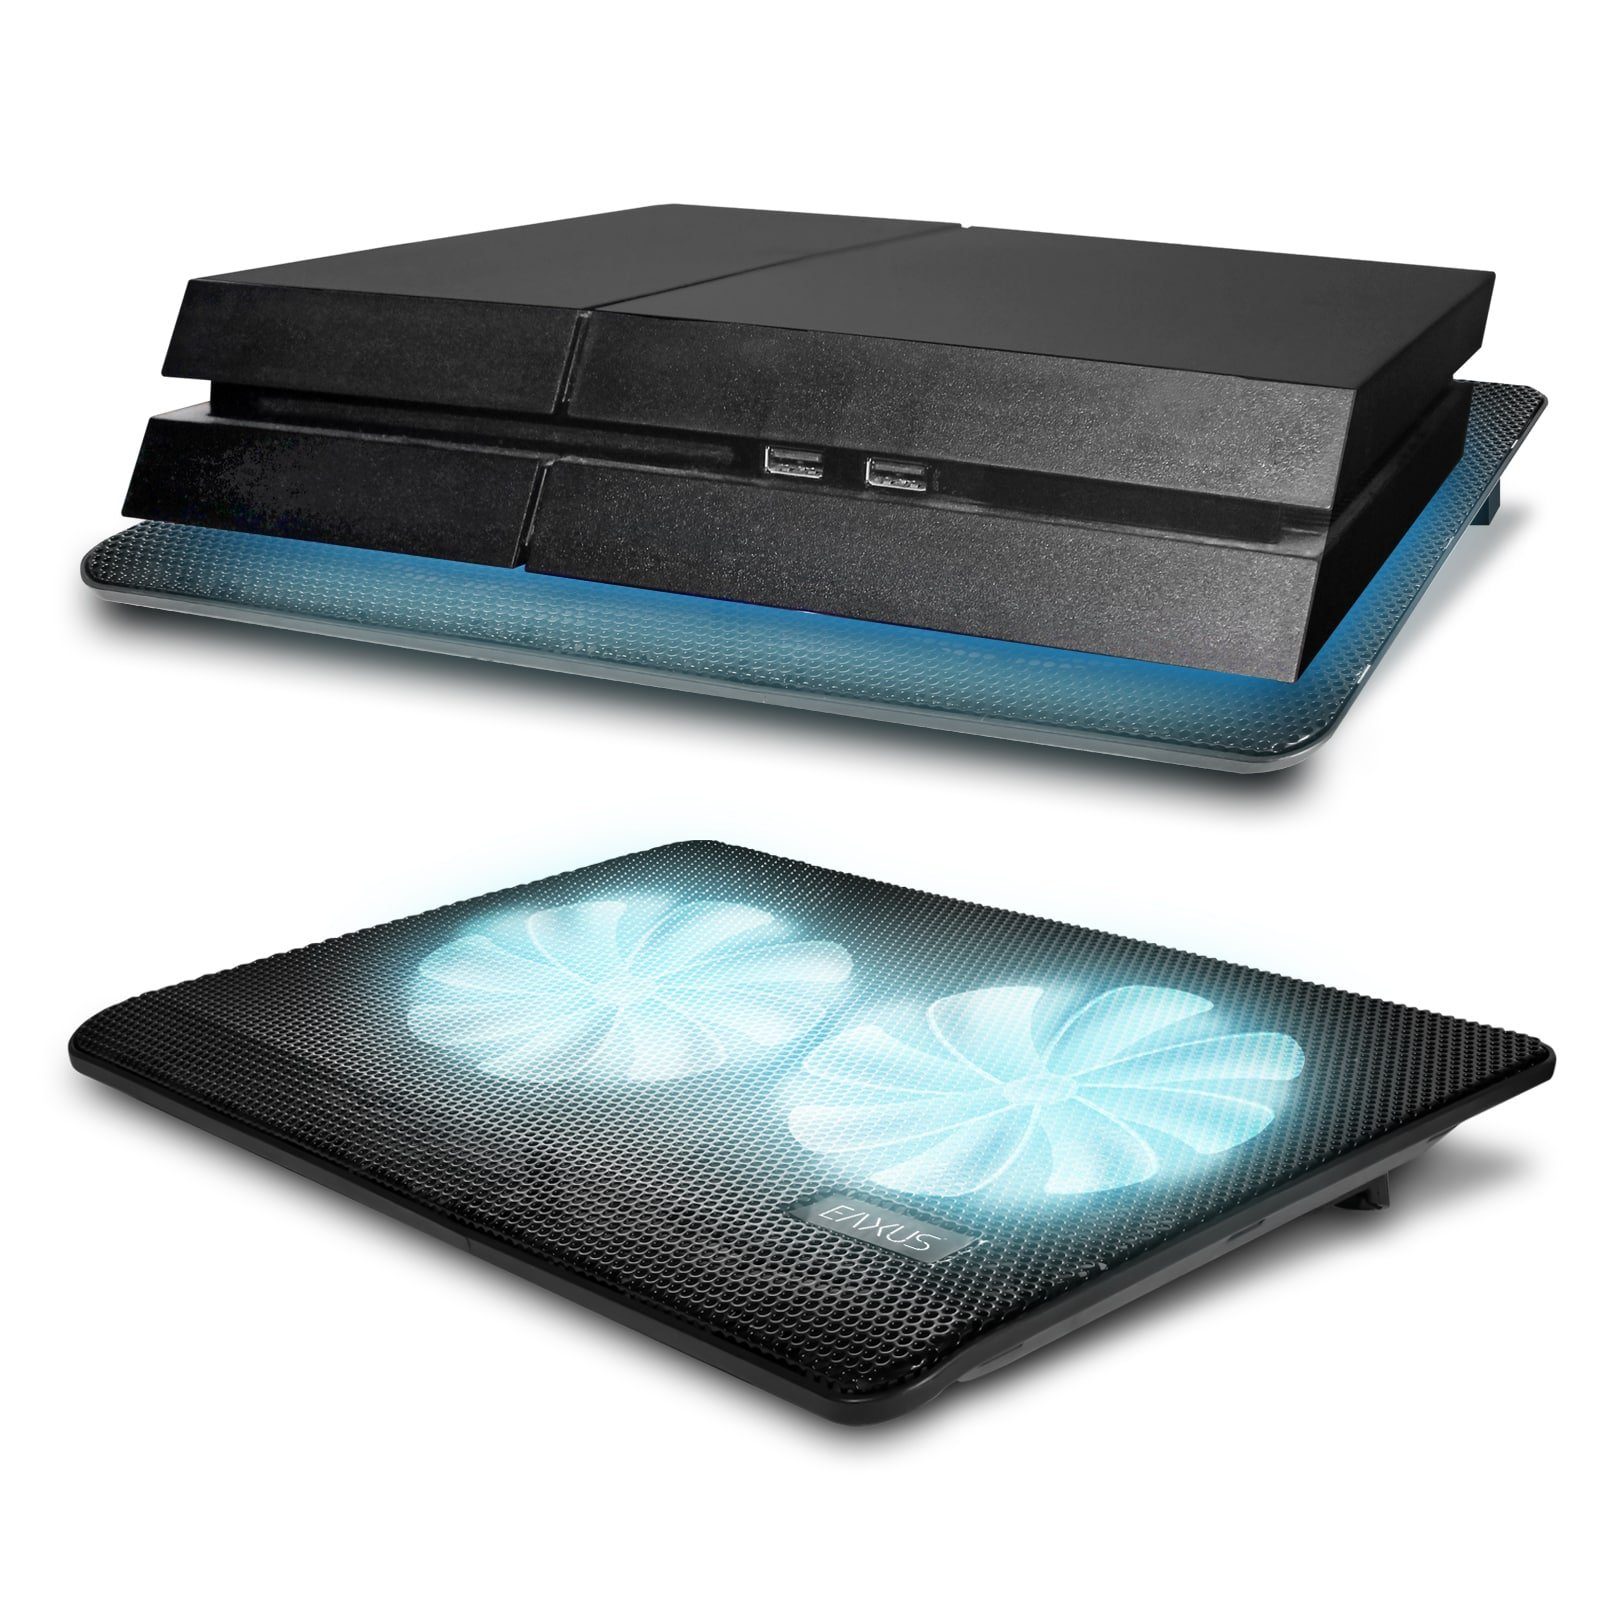 für Laptops Lüfter Notebook-Kühler Konsolen. weitere Padeax PS5, EAXUS Kühler, auch 4, LED-Beleuchtung PlayStation mit blauer &